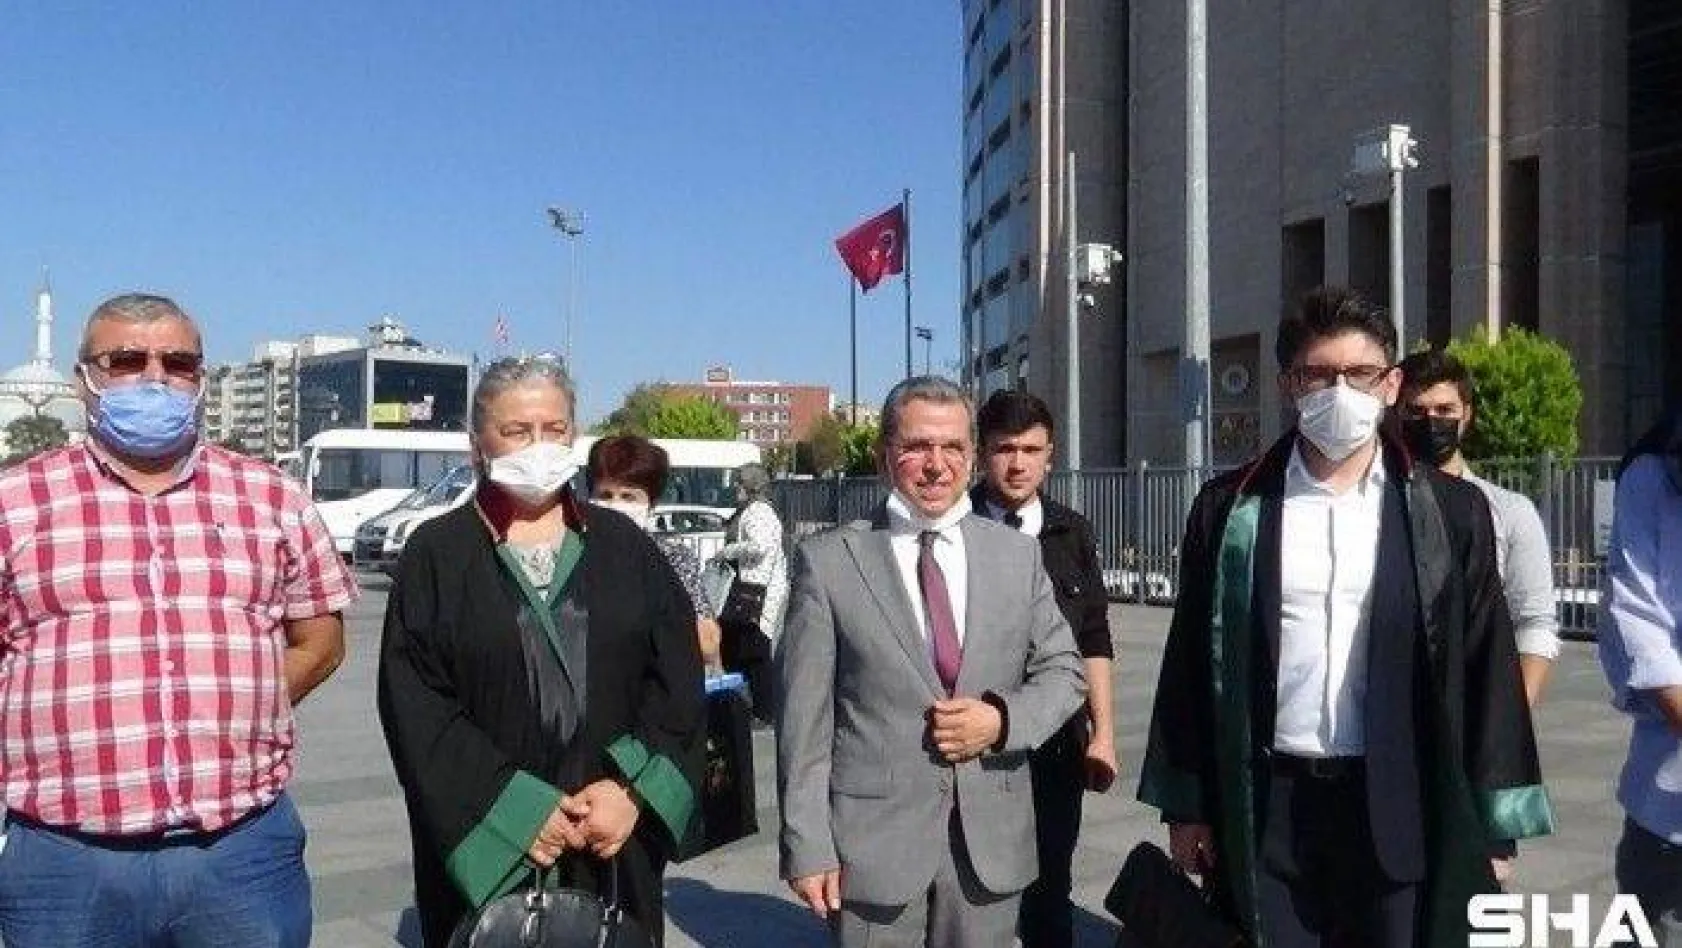 İstanbul Bilişim'in iflasına karar verildi